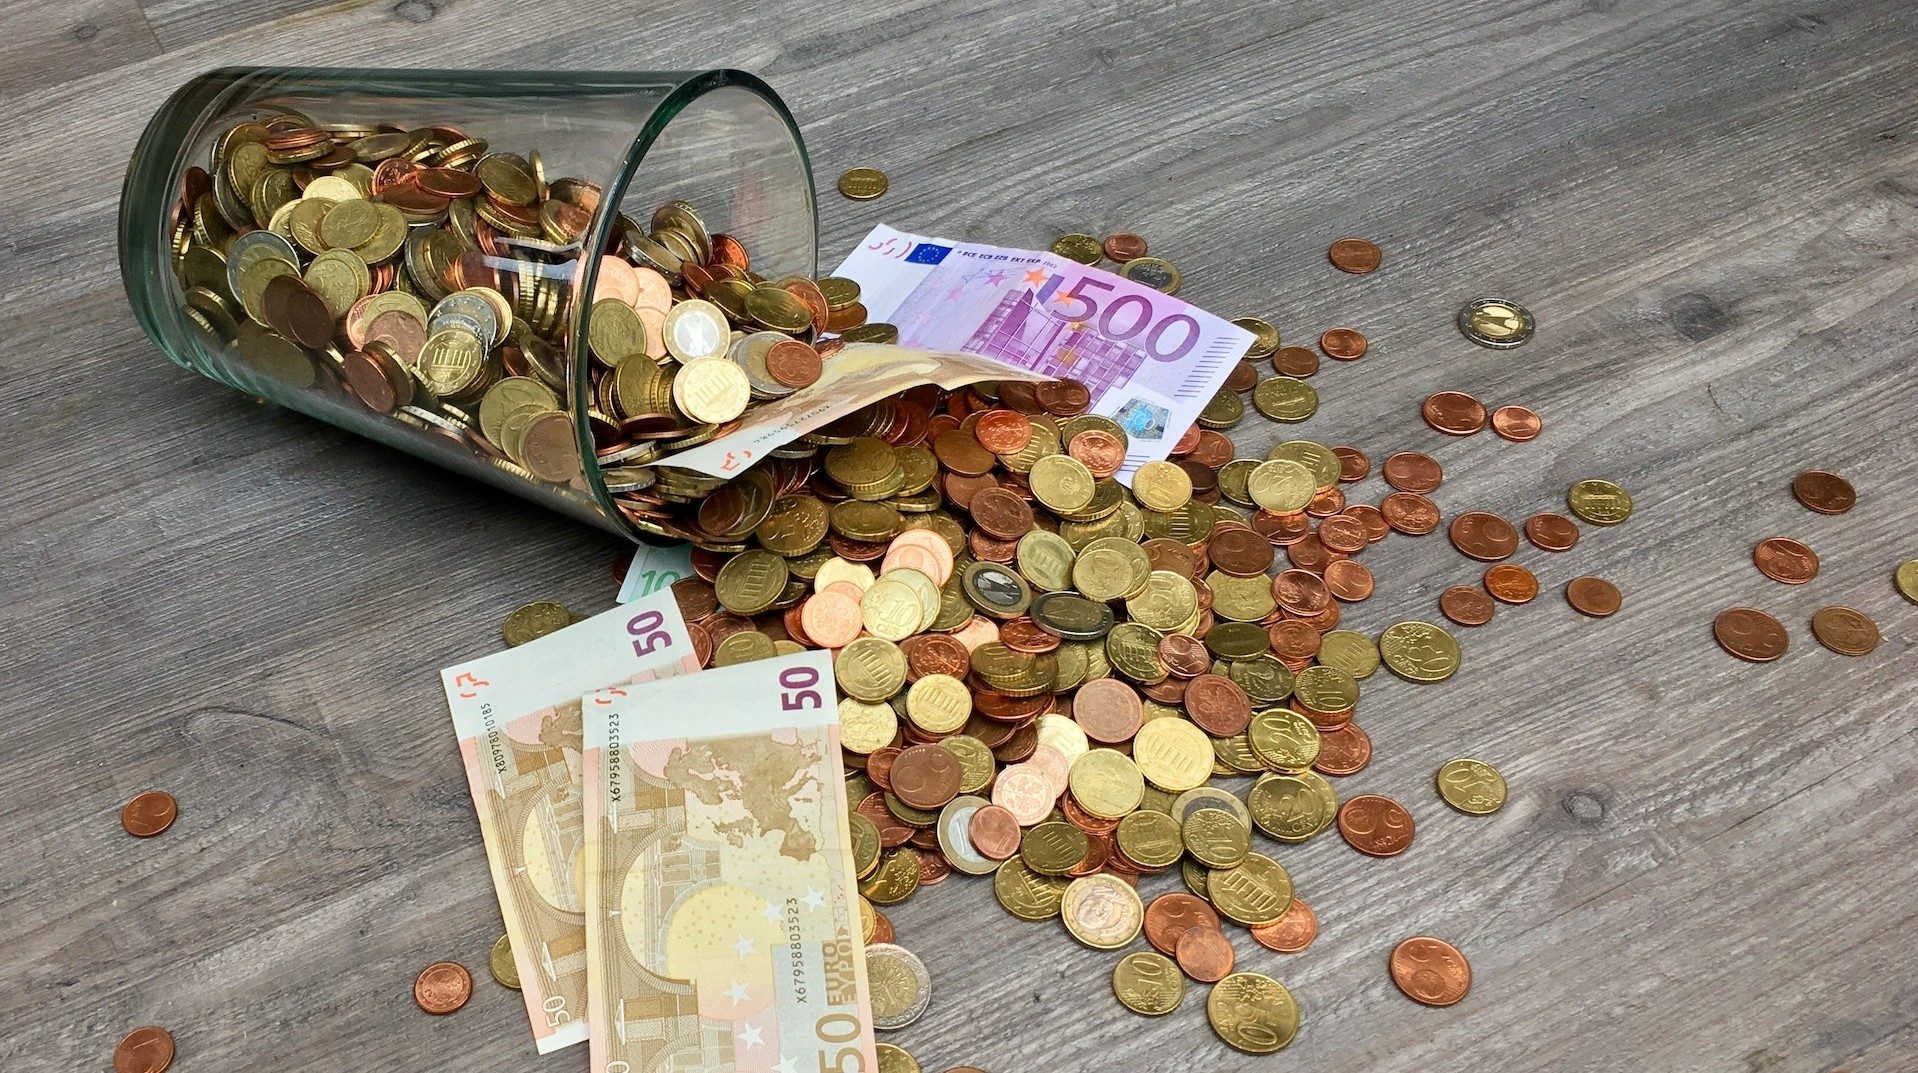 Auf einem umgestoßenen Glas sind Euro-Münzen und -Geldscheine herausgefallen